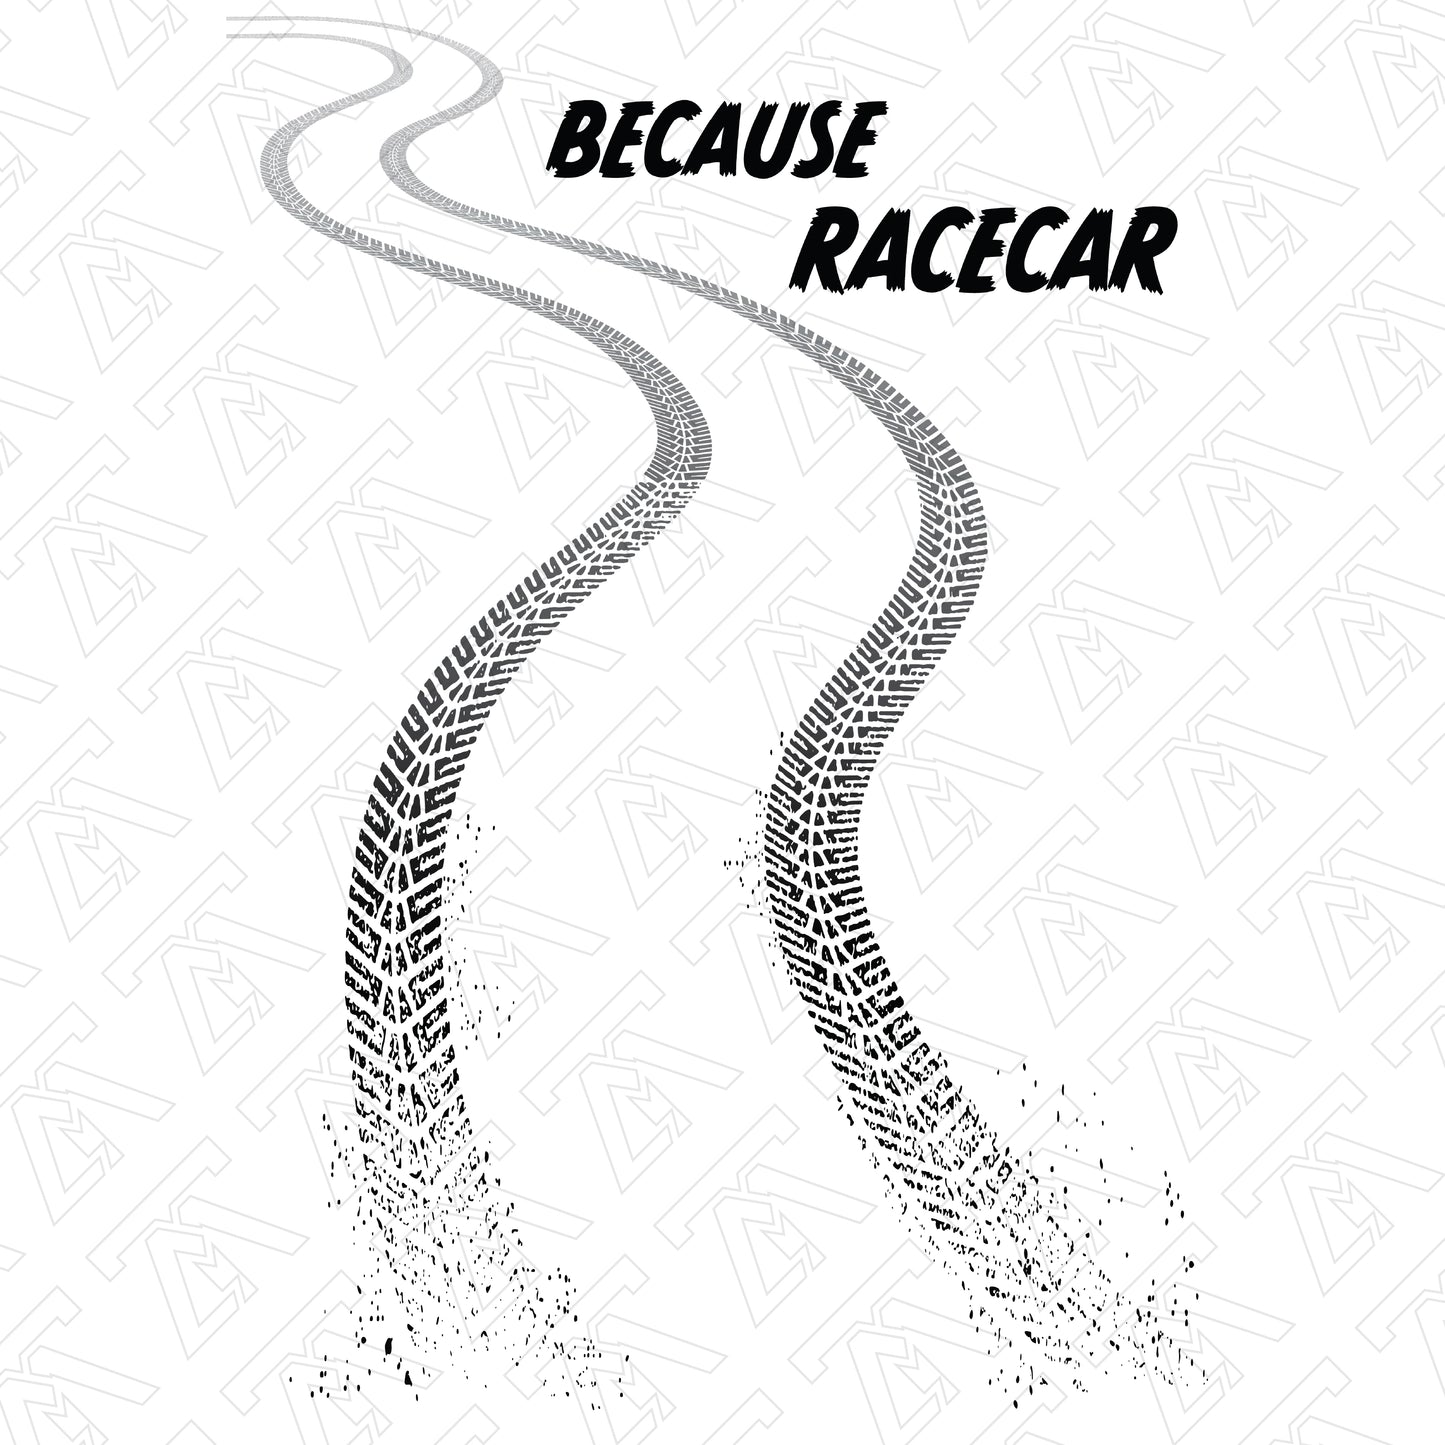 Because Racecar